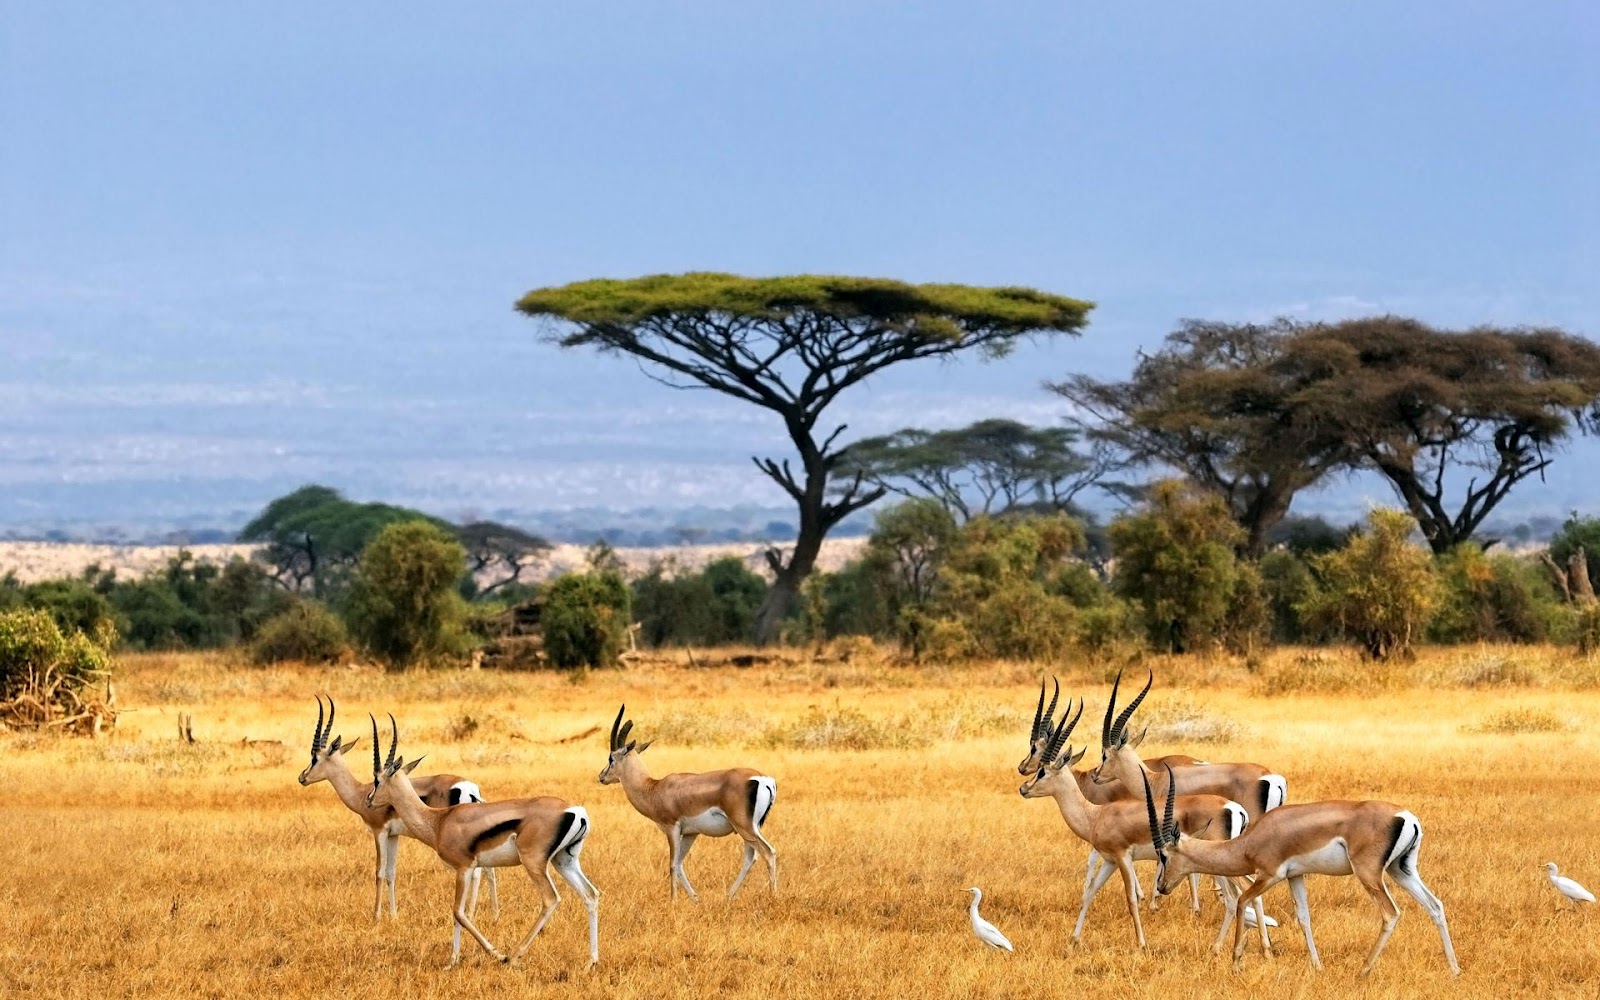 African Safari Landscape